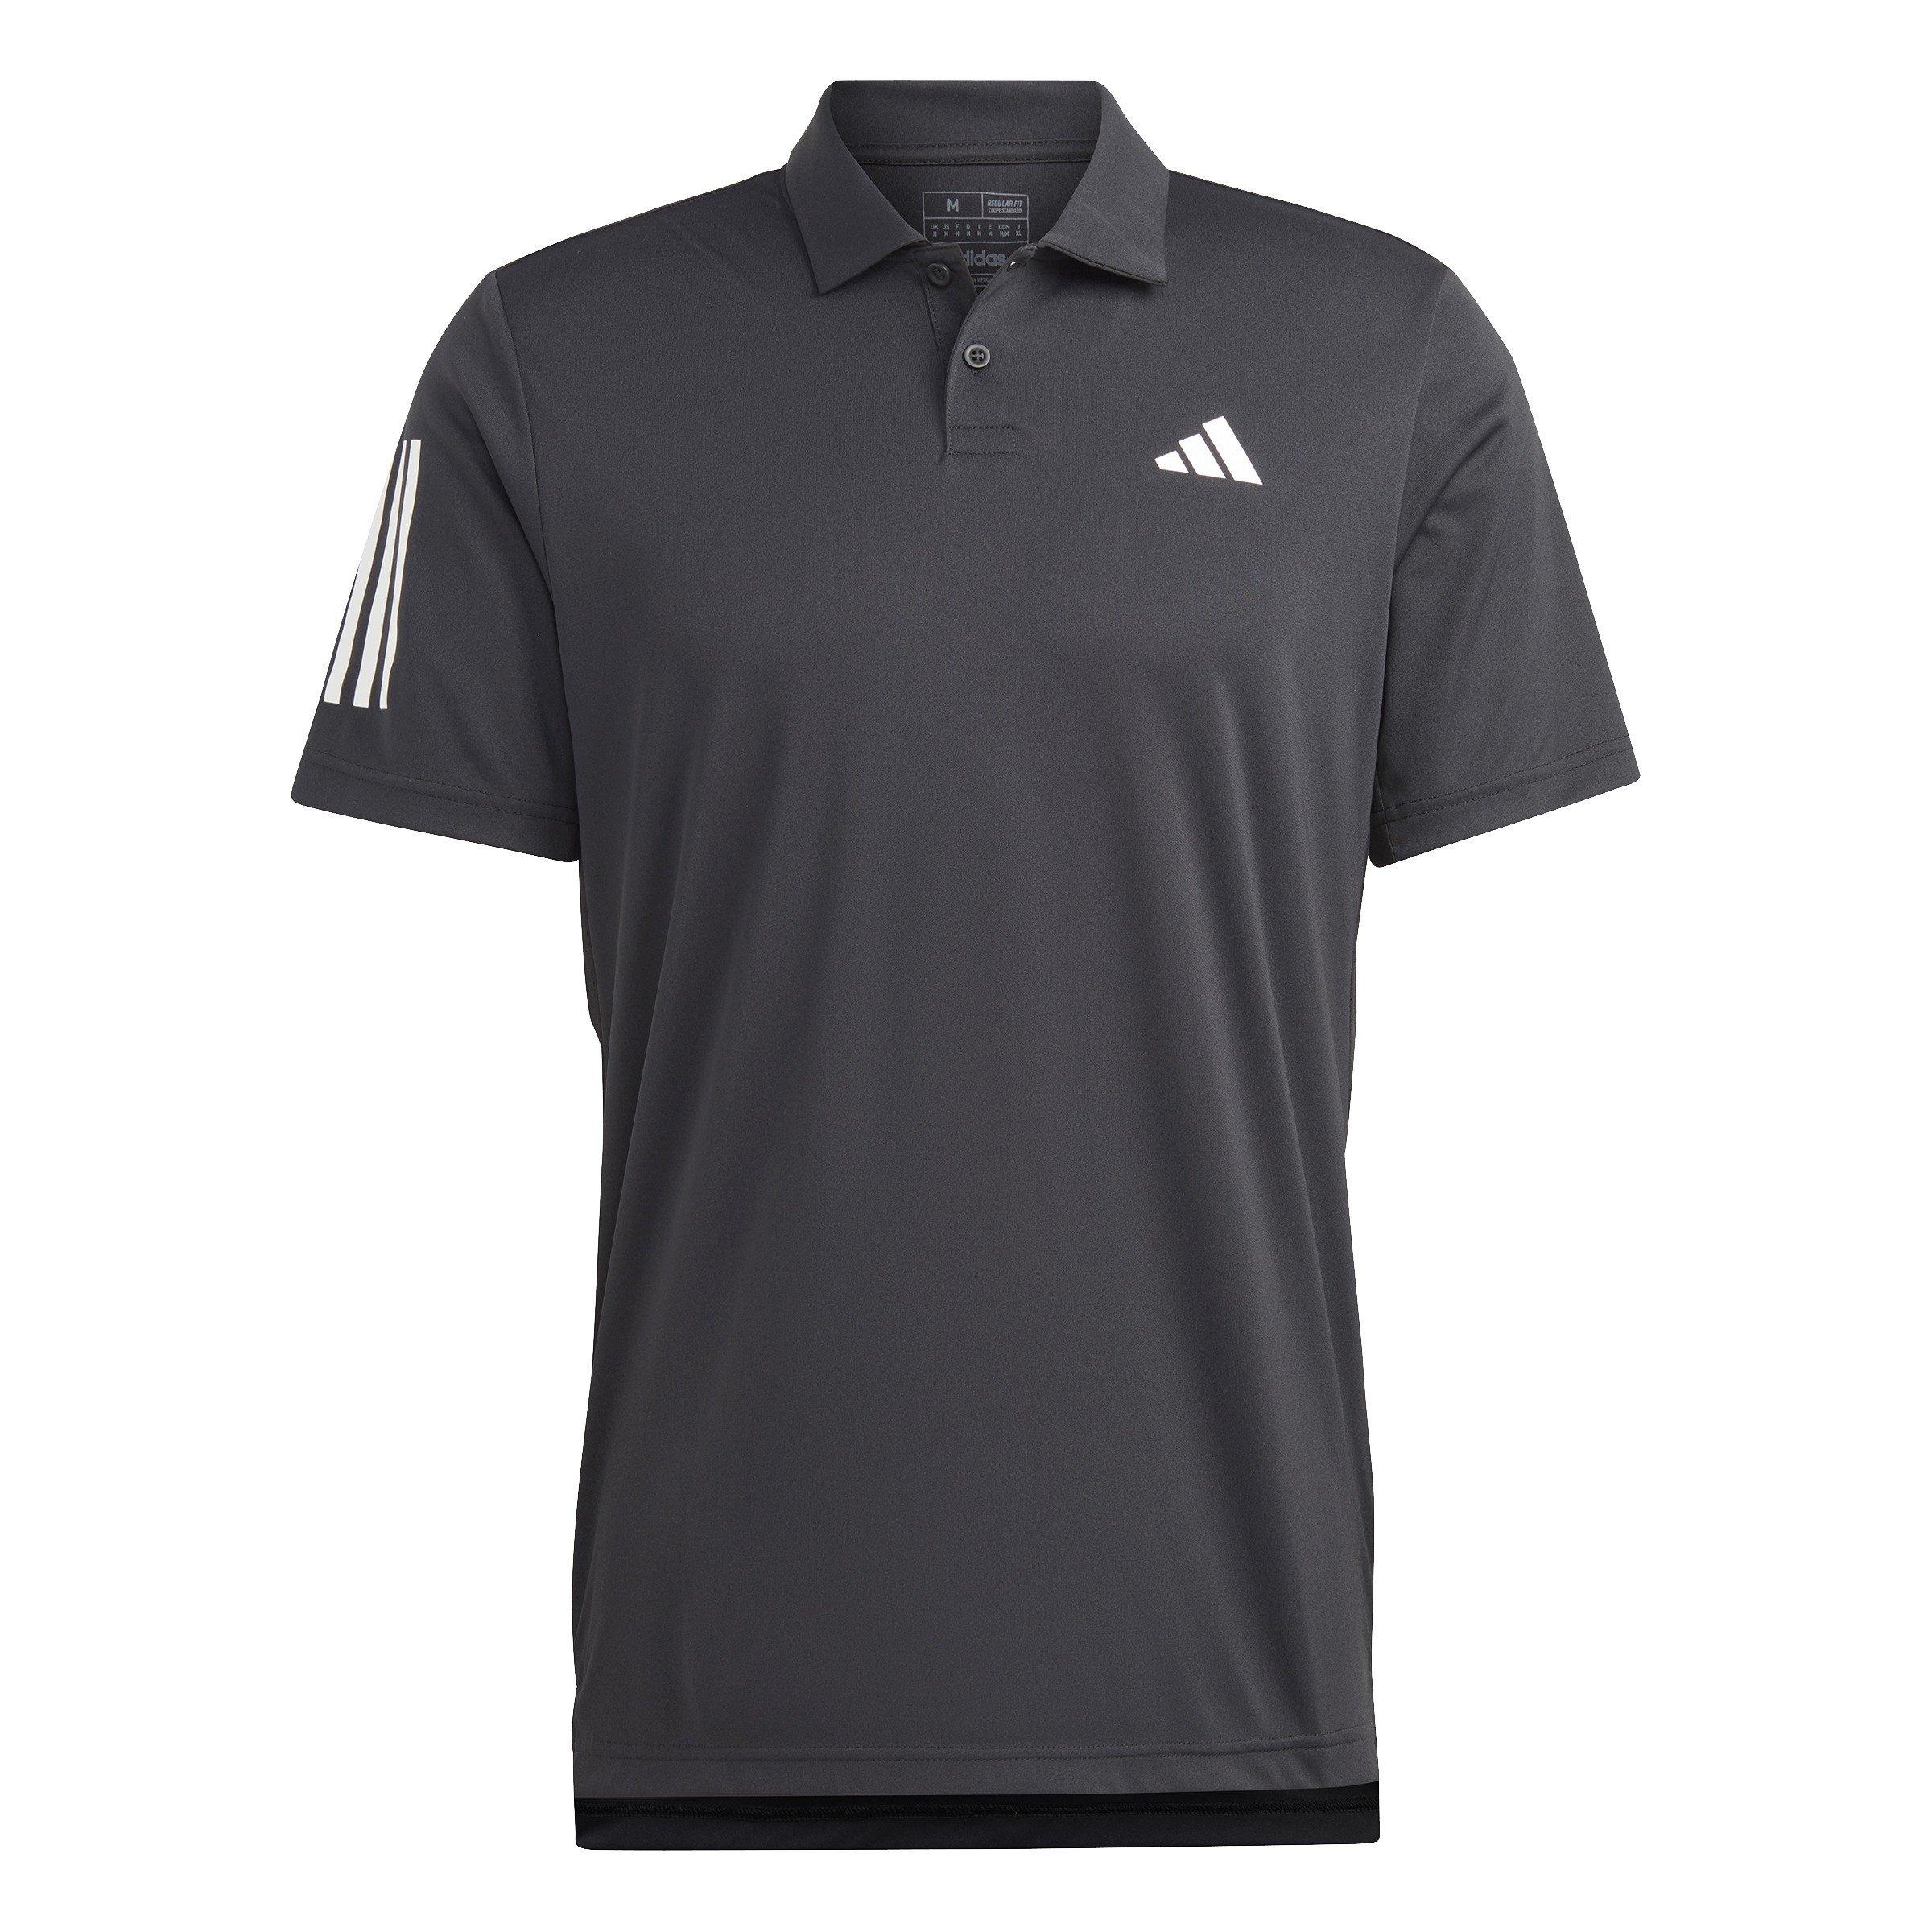 adidas | Tennis Club Three Stripes Mens Polo Shirt | Short Sleeve ...